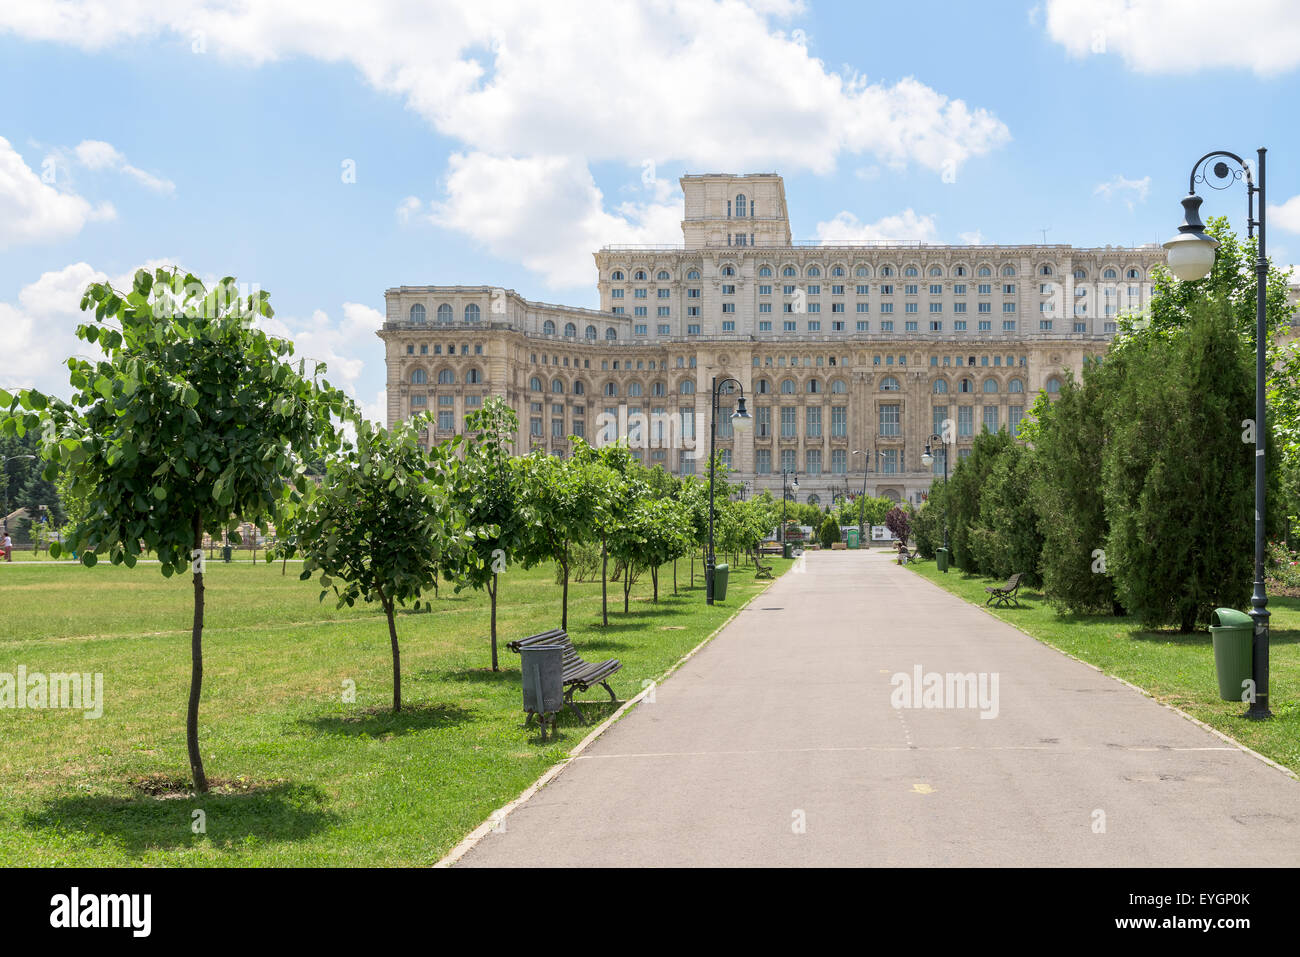 Der öffentliche Park Izvor In Bukarest wurde im Jahre 1985 erbaut und befindet sich direkt neben dem Palast des Parlaments (Casa Poporului). Stockfoto